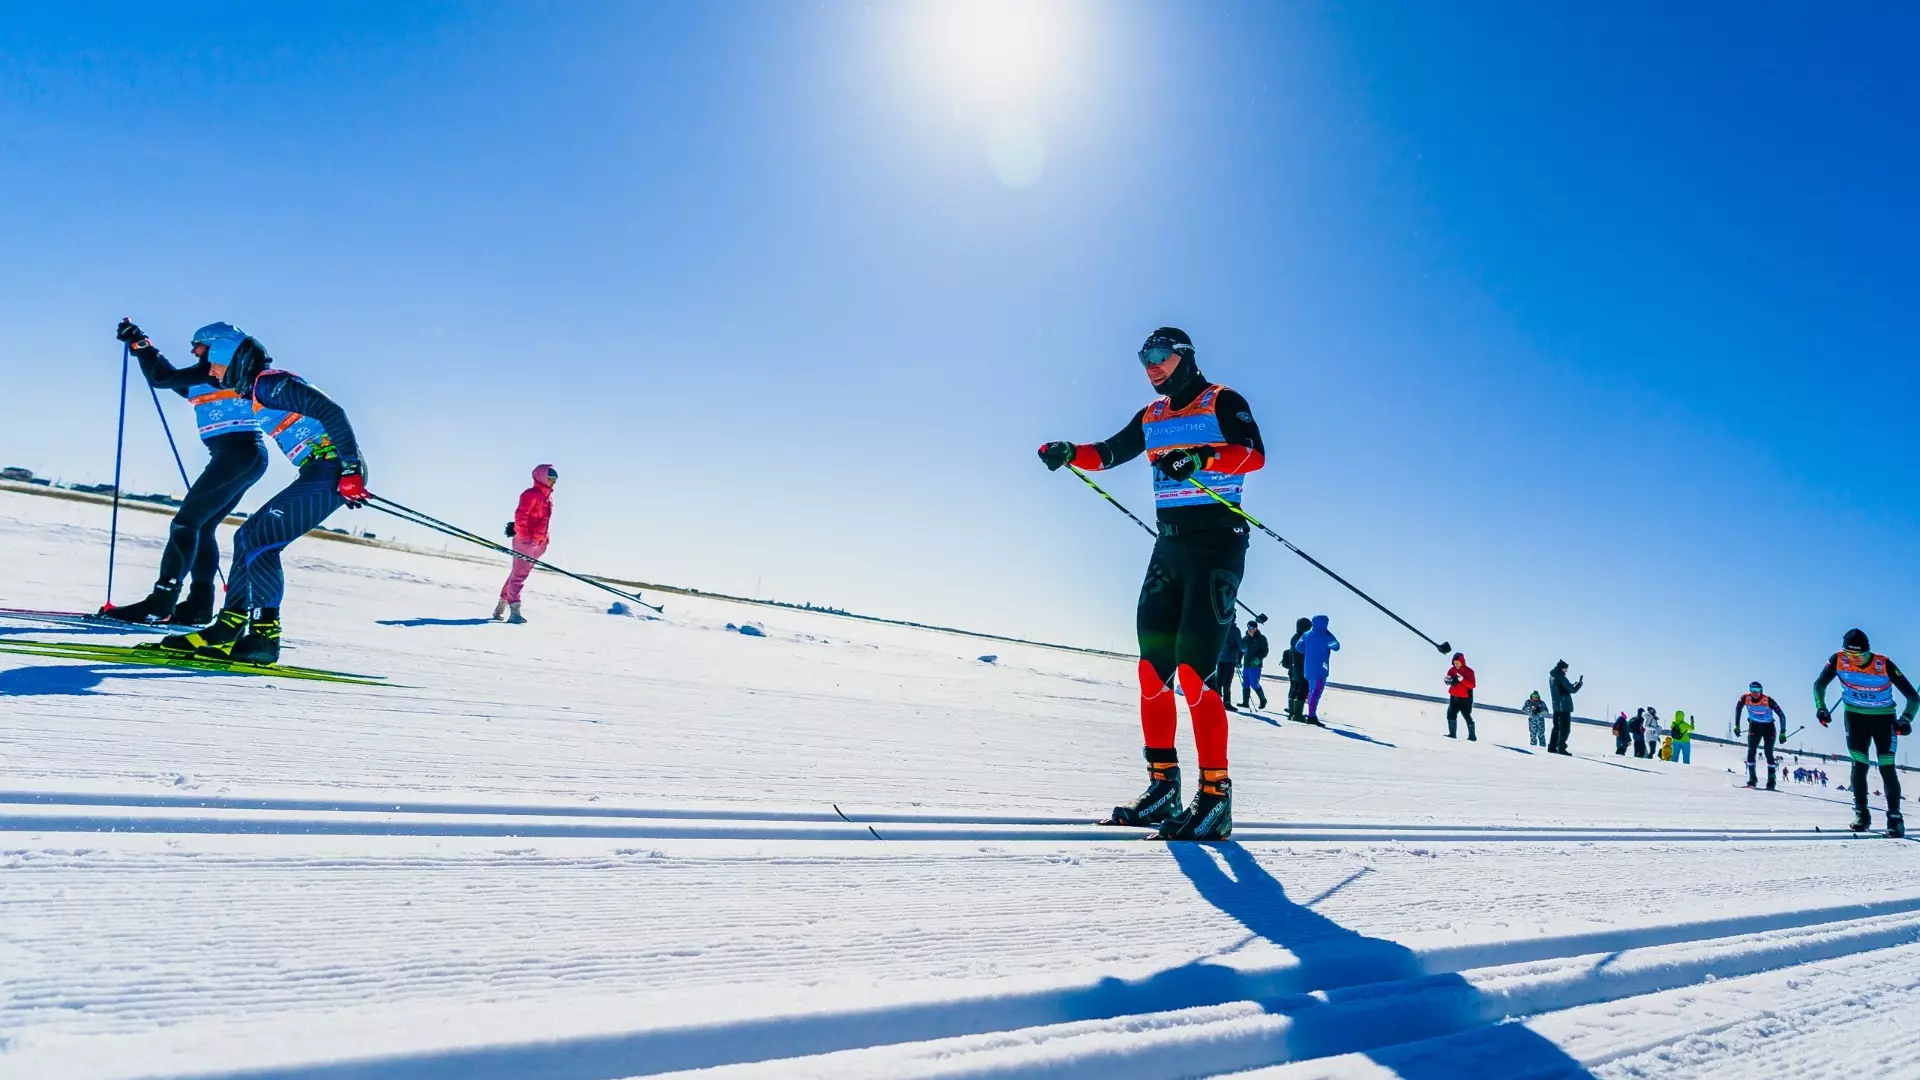 Организаторы Югорского лыжного марафона объявили размер призового фонда